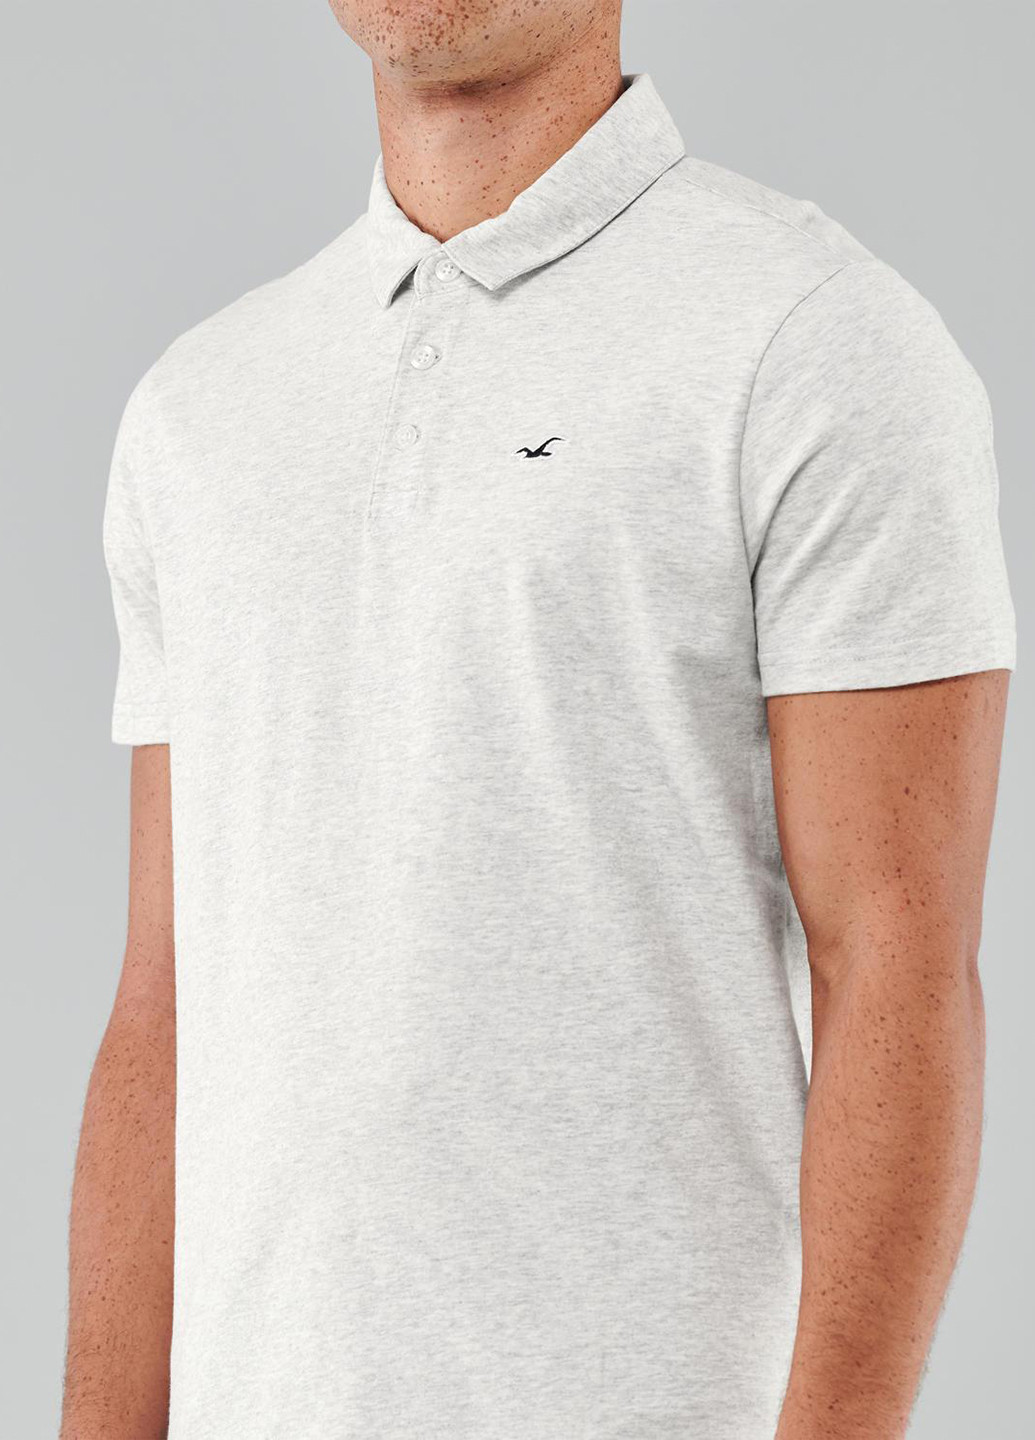 Светло-серая футболка-поло для мужчин Hollister меланжевая